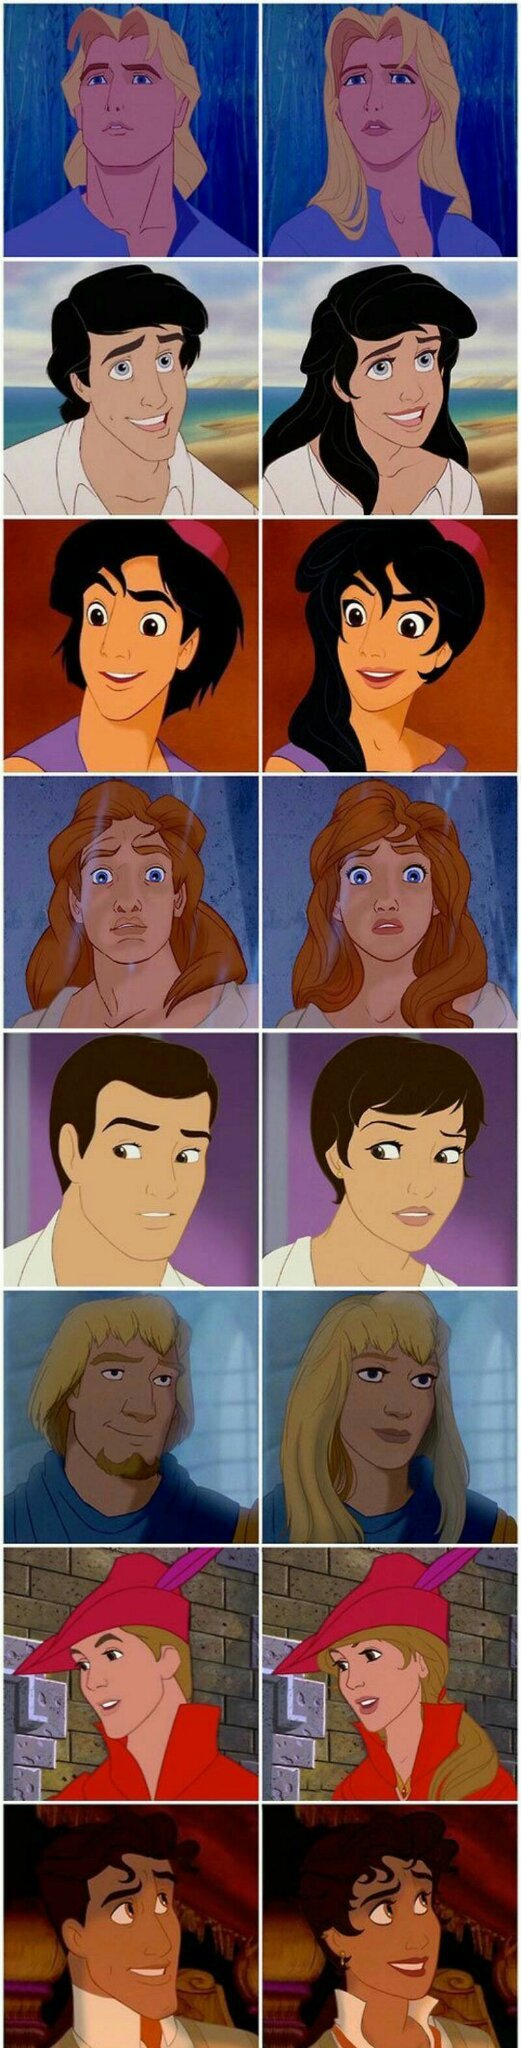 Aladin me gusta - meme